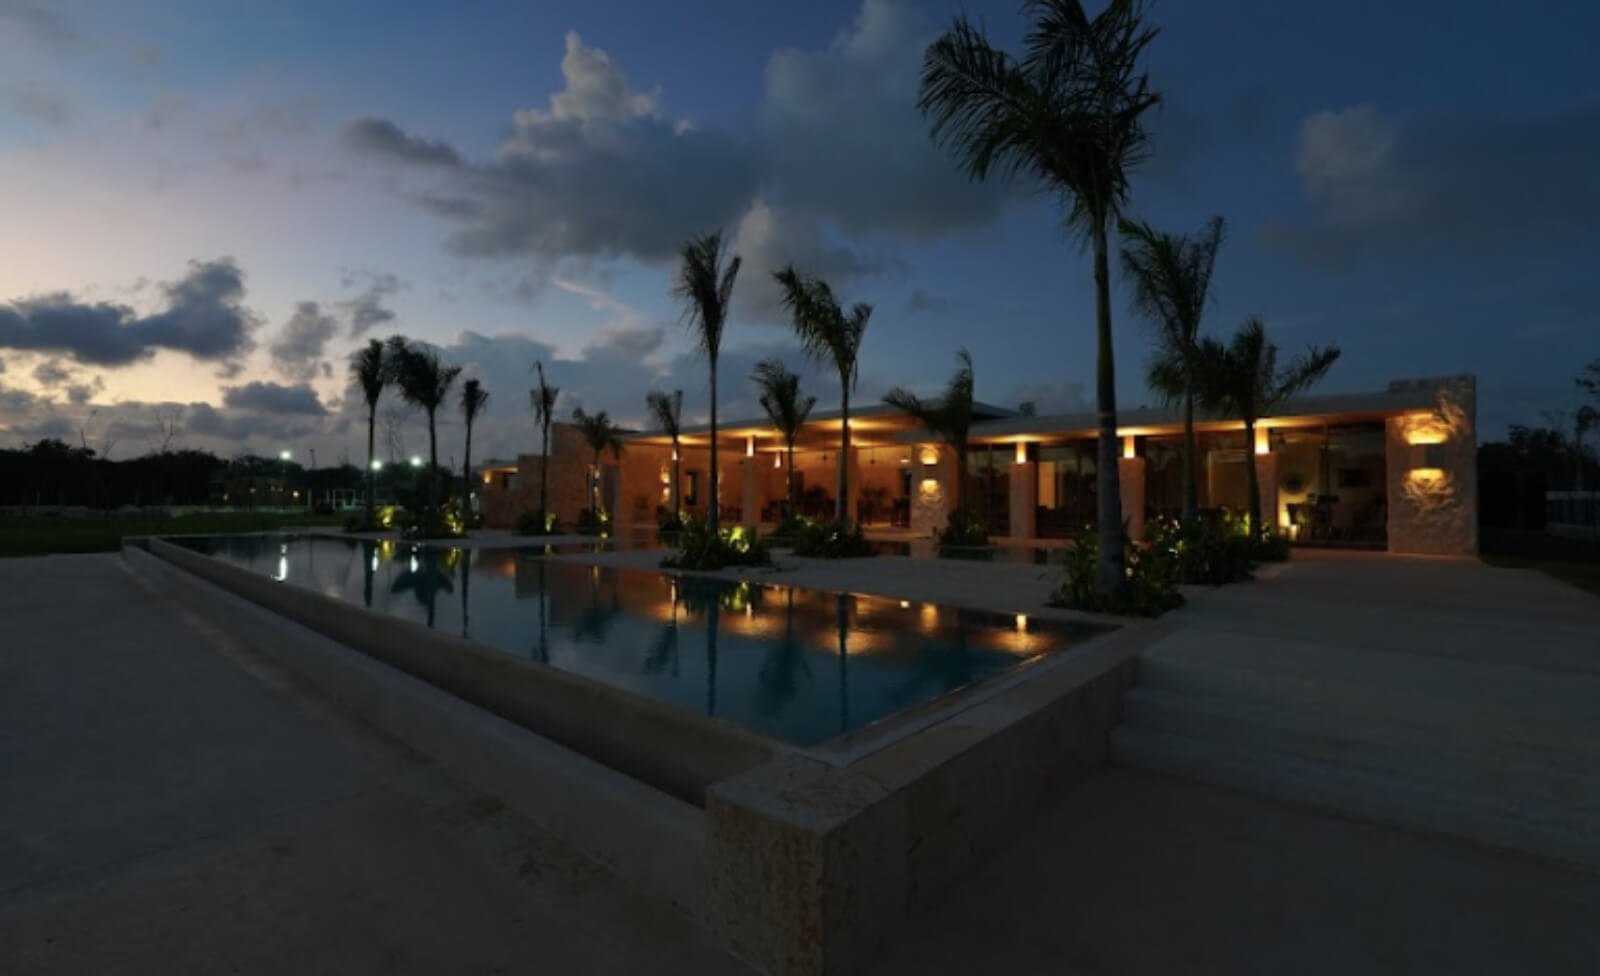 Terreno en residencial privado con casa club, Salon de Juegos, Pet Park, en venta en Cancun